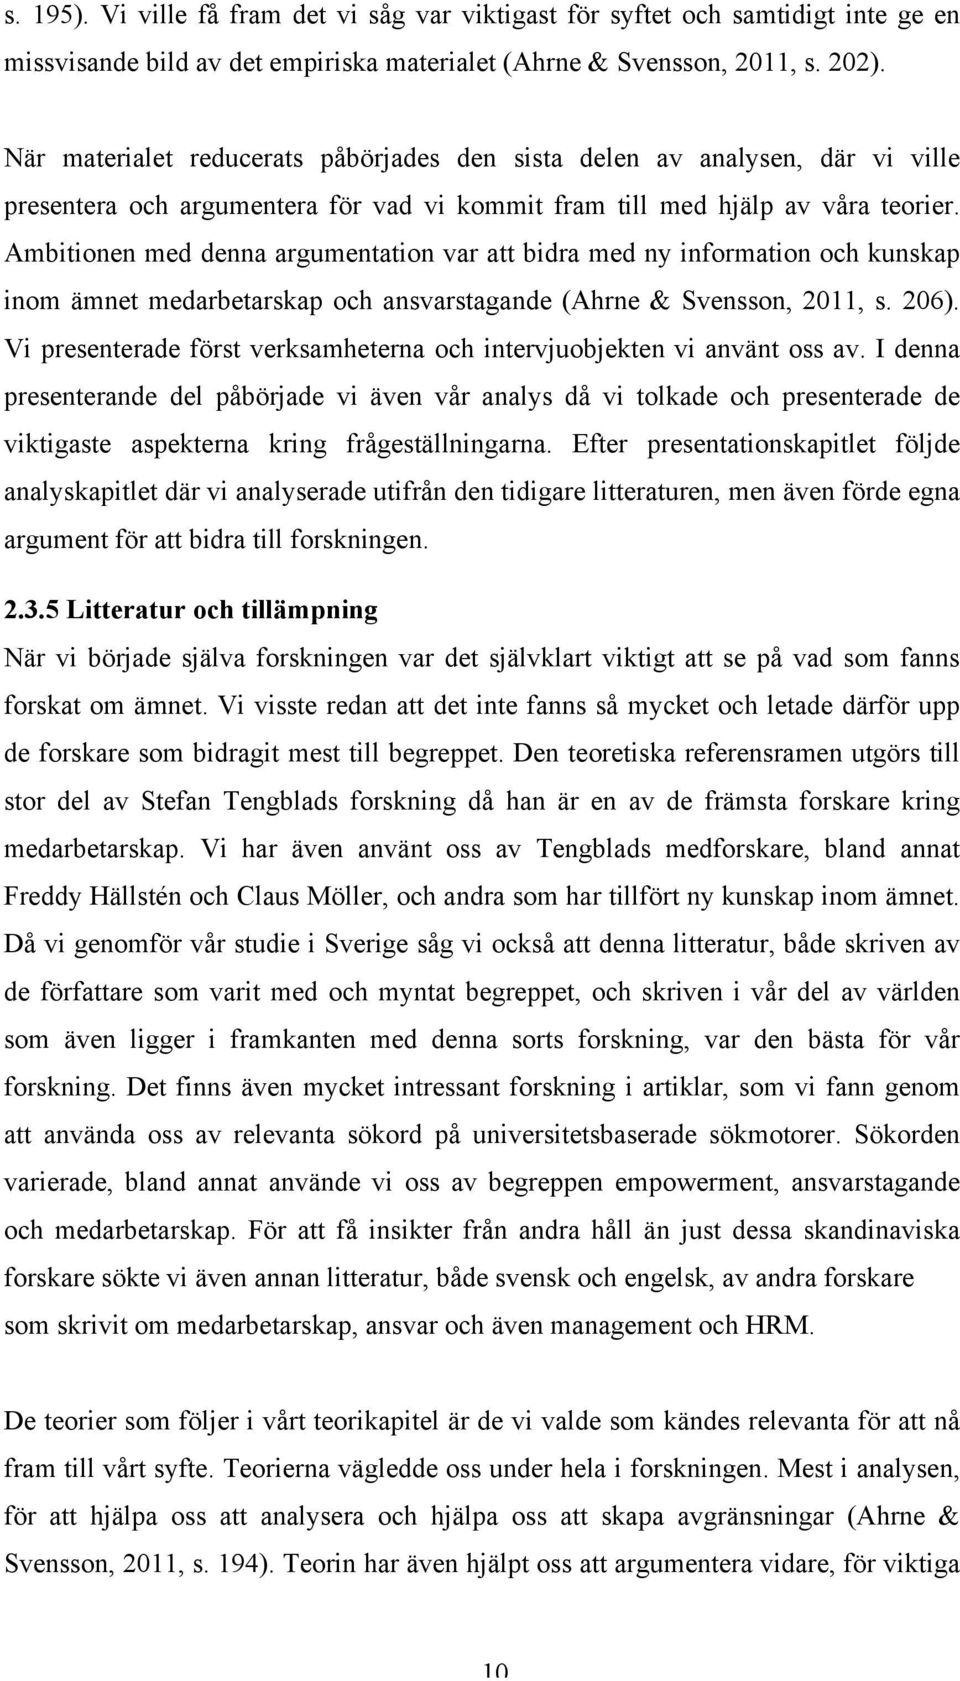 Ambitionen med denna argumentation var att bidra med ny information och kunskap inom ämnet medarbetarskap och ansvarstagande (Ahrne & Svensson, 2011, s. 206).